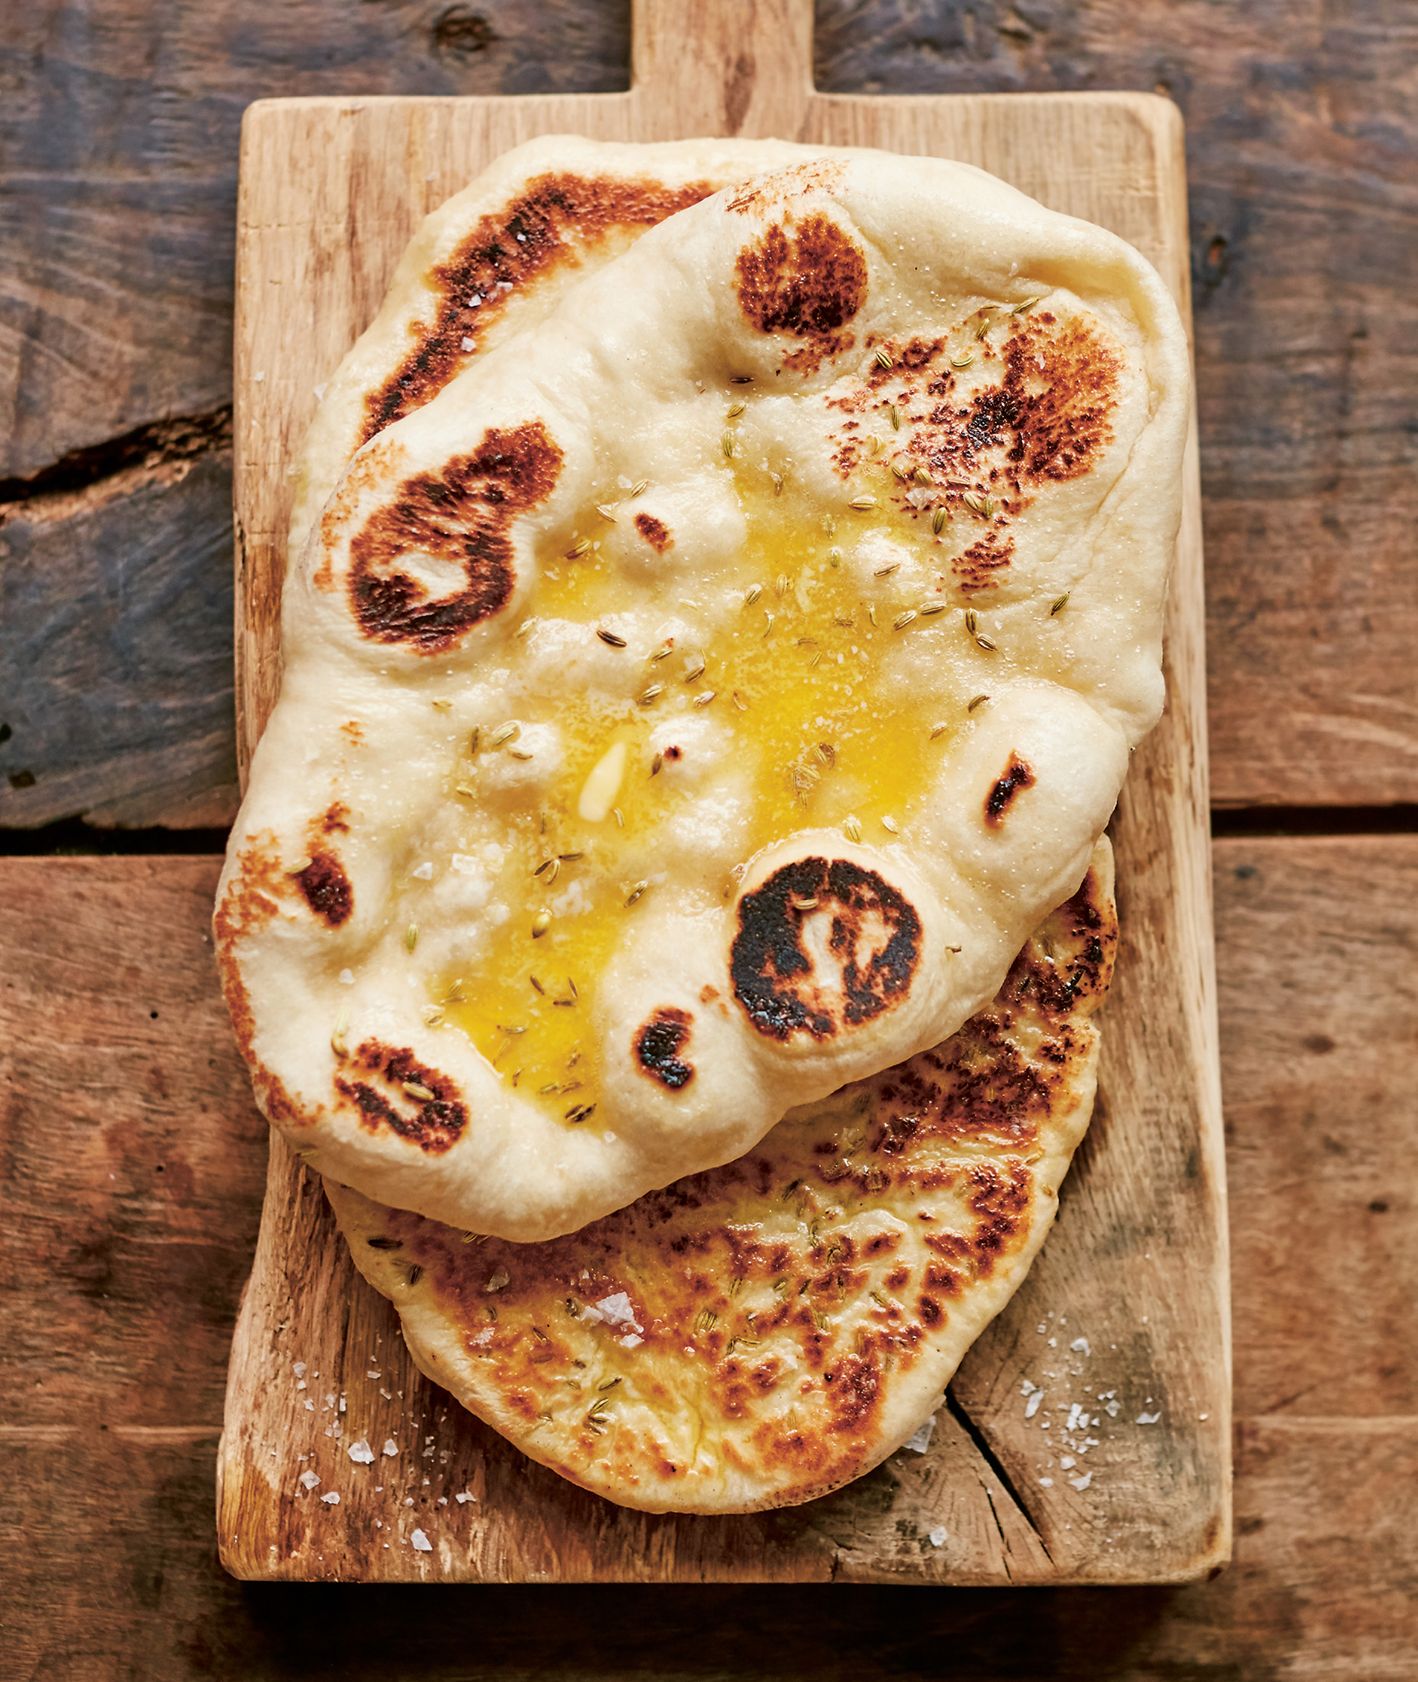 Zdjęcie fenkułowego chlebka z książki Jamiego Olivera "Razem" / fot. David Loftus